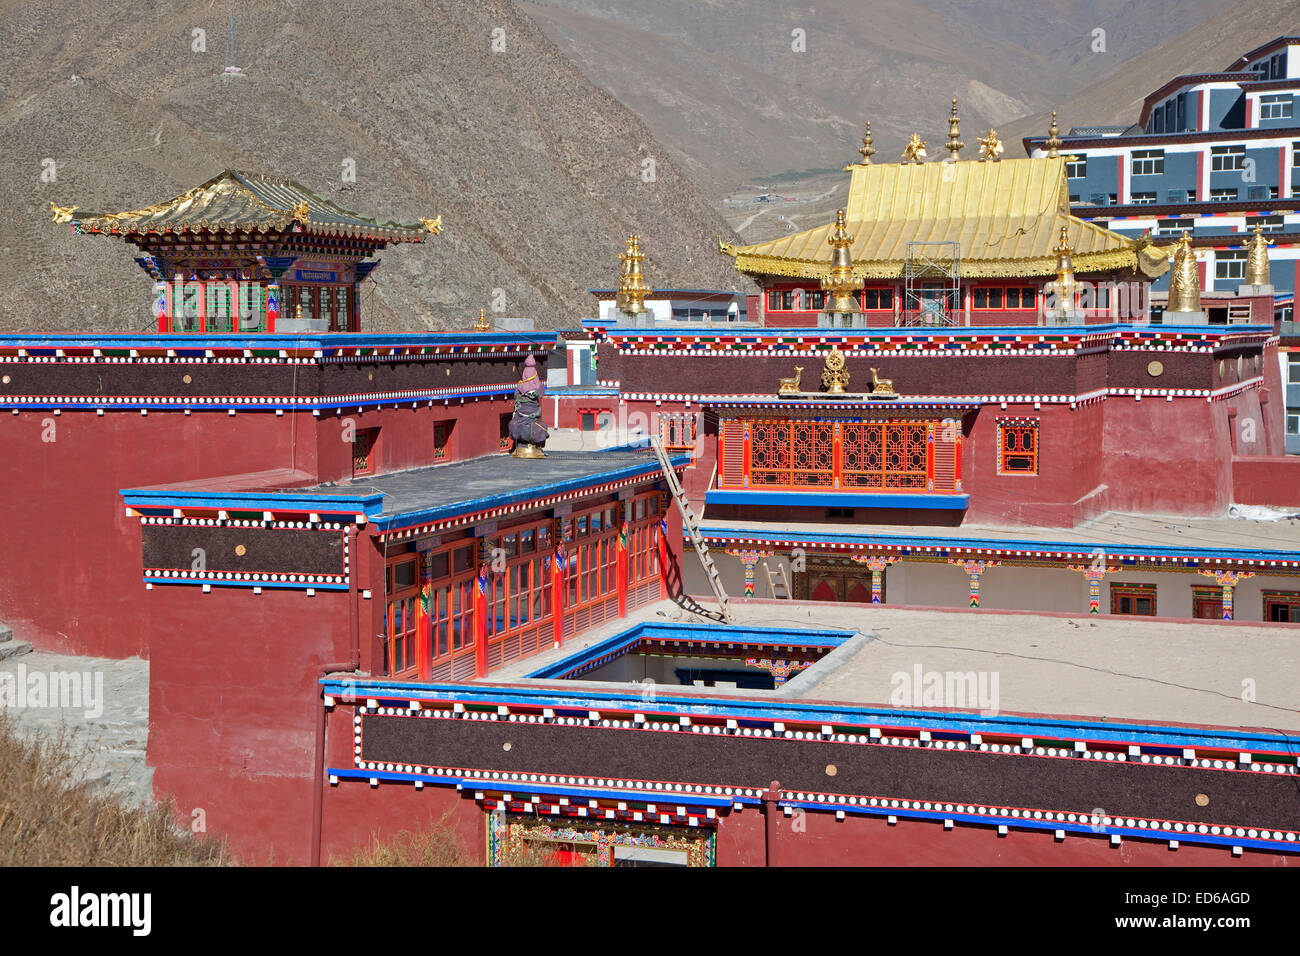 La reconstruction de Yushu à nouveau Thrangu Gompa tibétain du monastère Thrangu après le séisme de Yushu 2010, province de Qinghai, Chine Banque D'Images